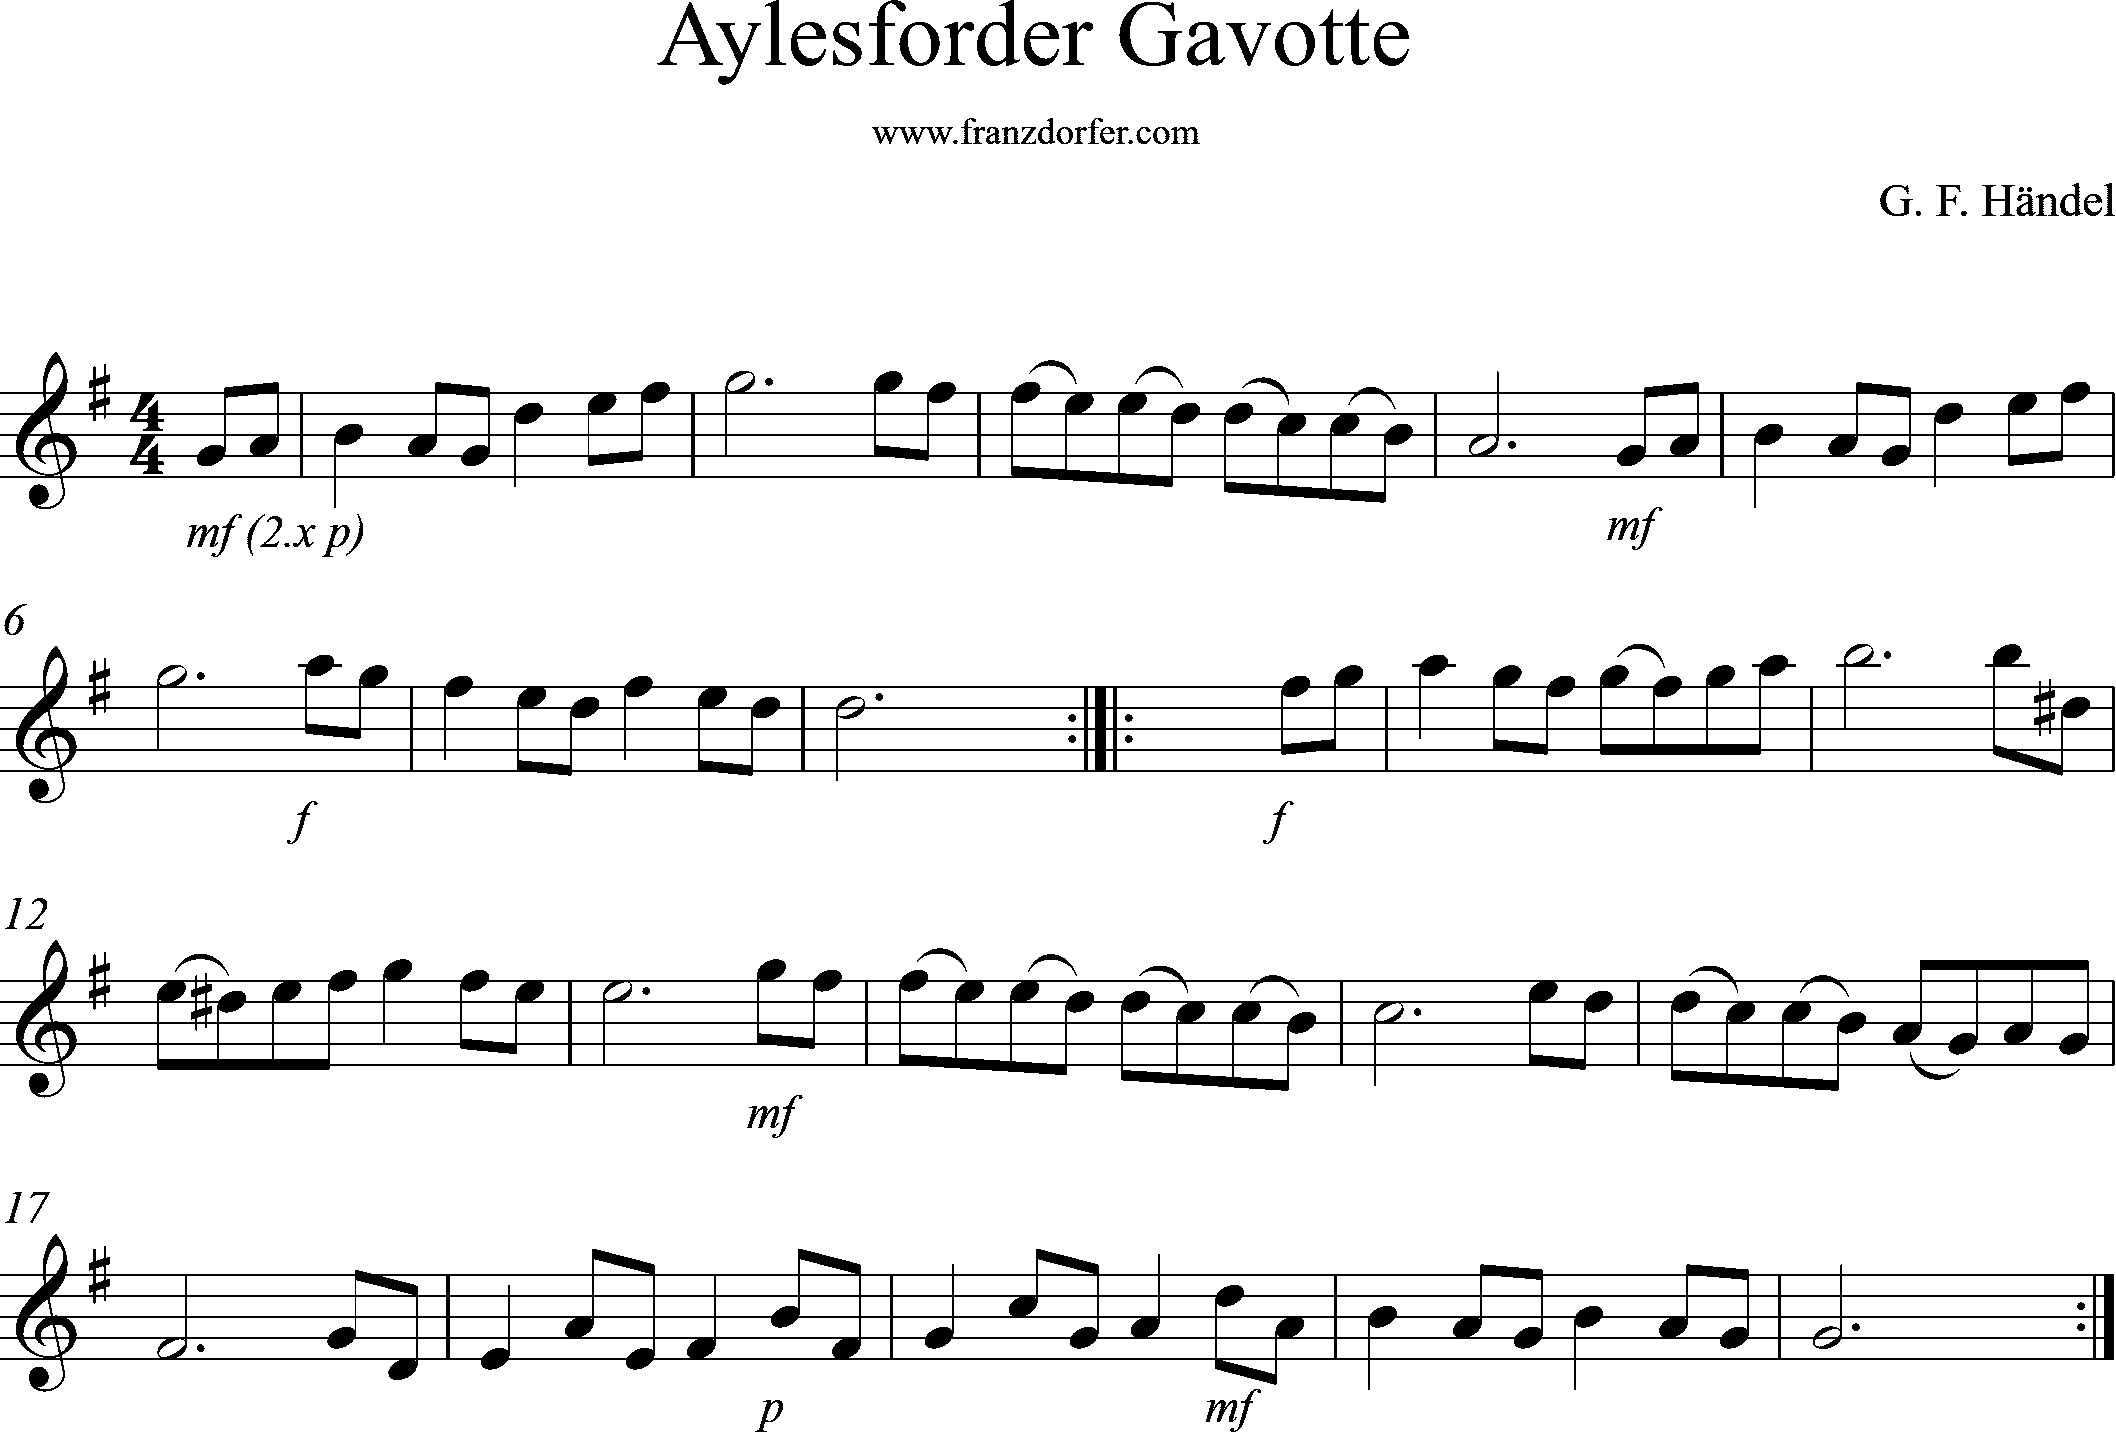 Aylesforder Gavotte- Clarinet part